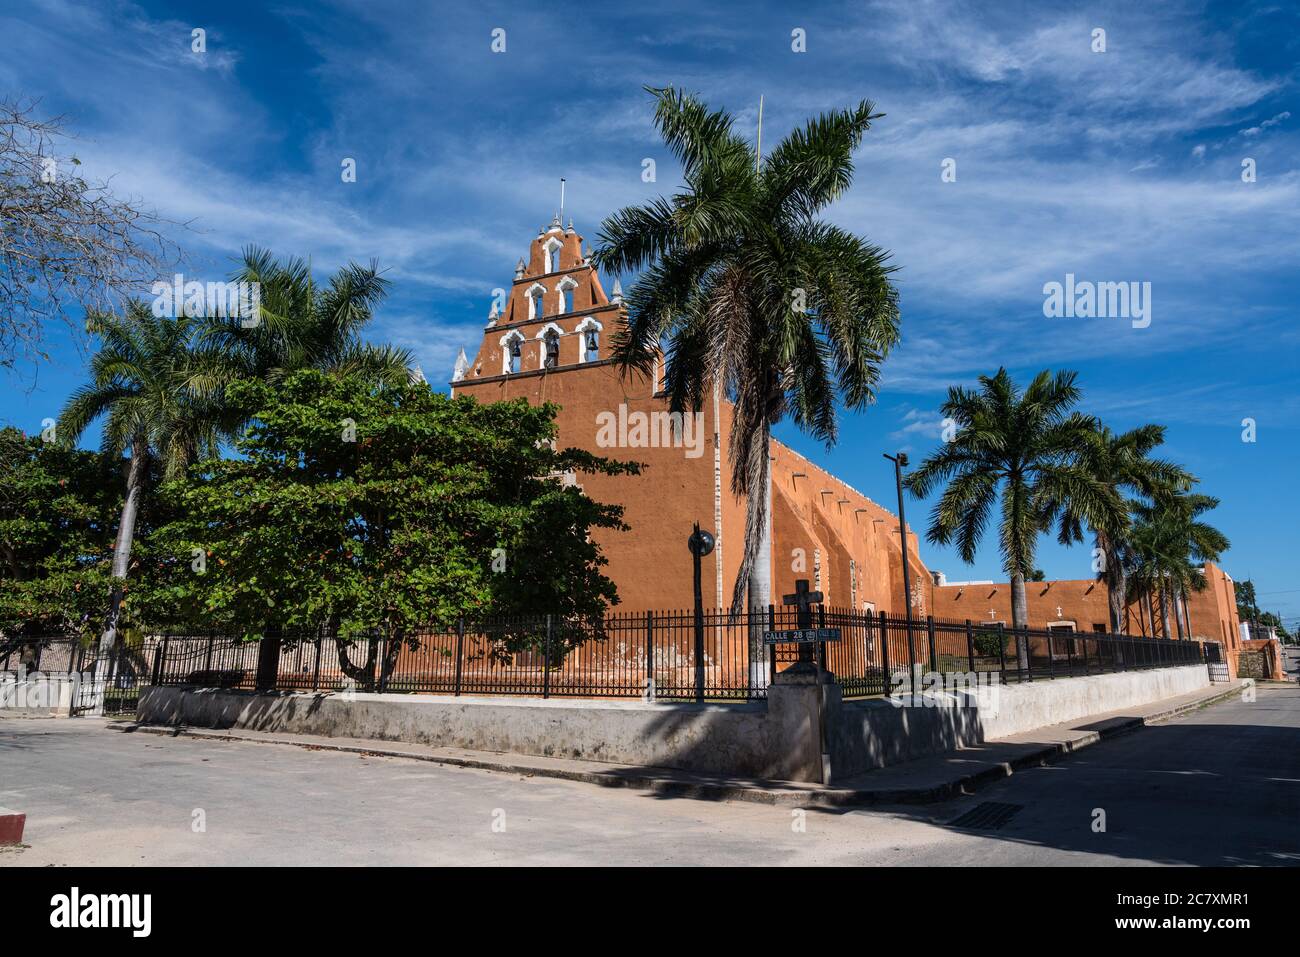 La Chiesa coloniale spagnola della Vergine Assunta, o la Virgen de la Asuncion, fu completata nel 1756, sostituendo una chiesa più antica della Maya Foto Stock